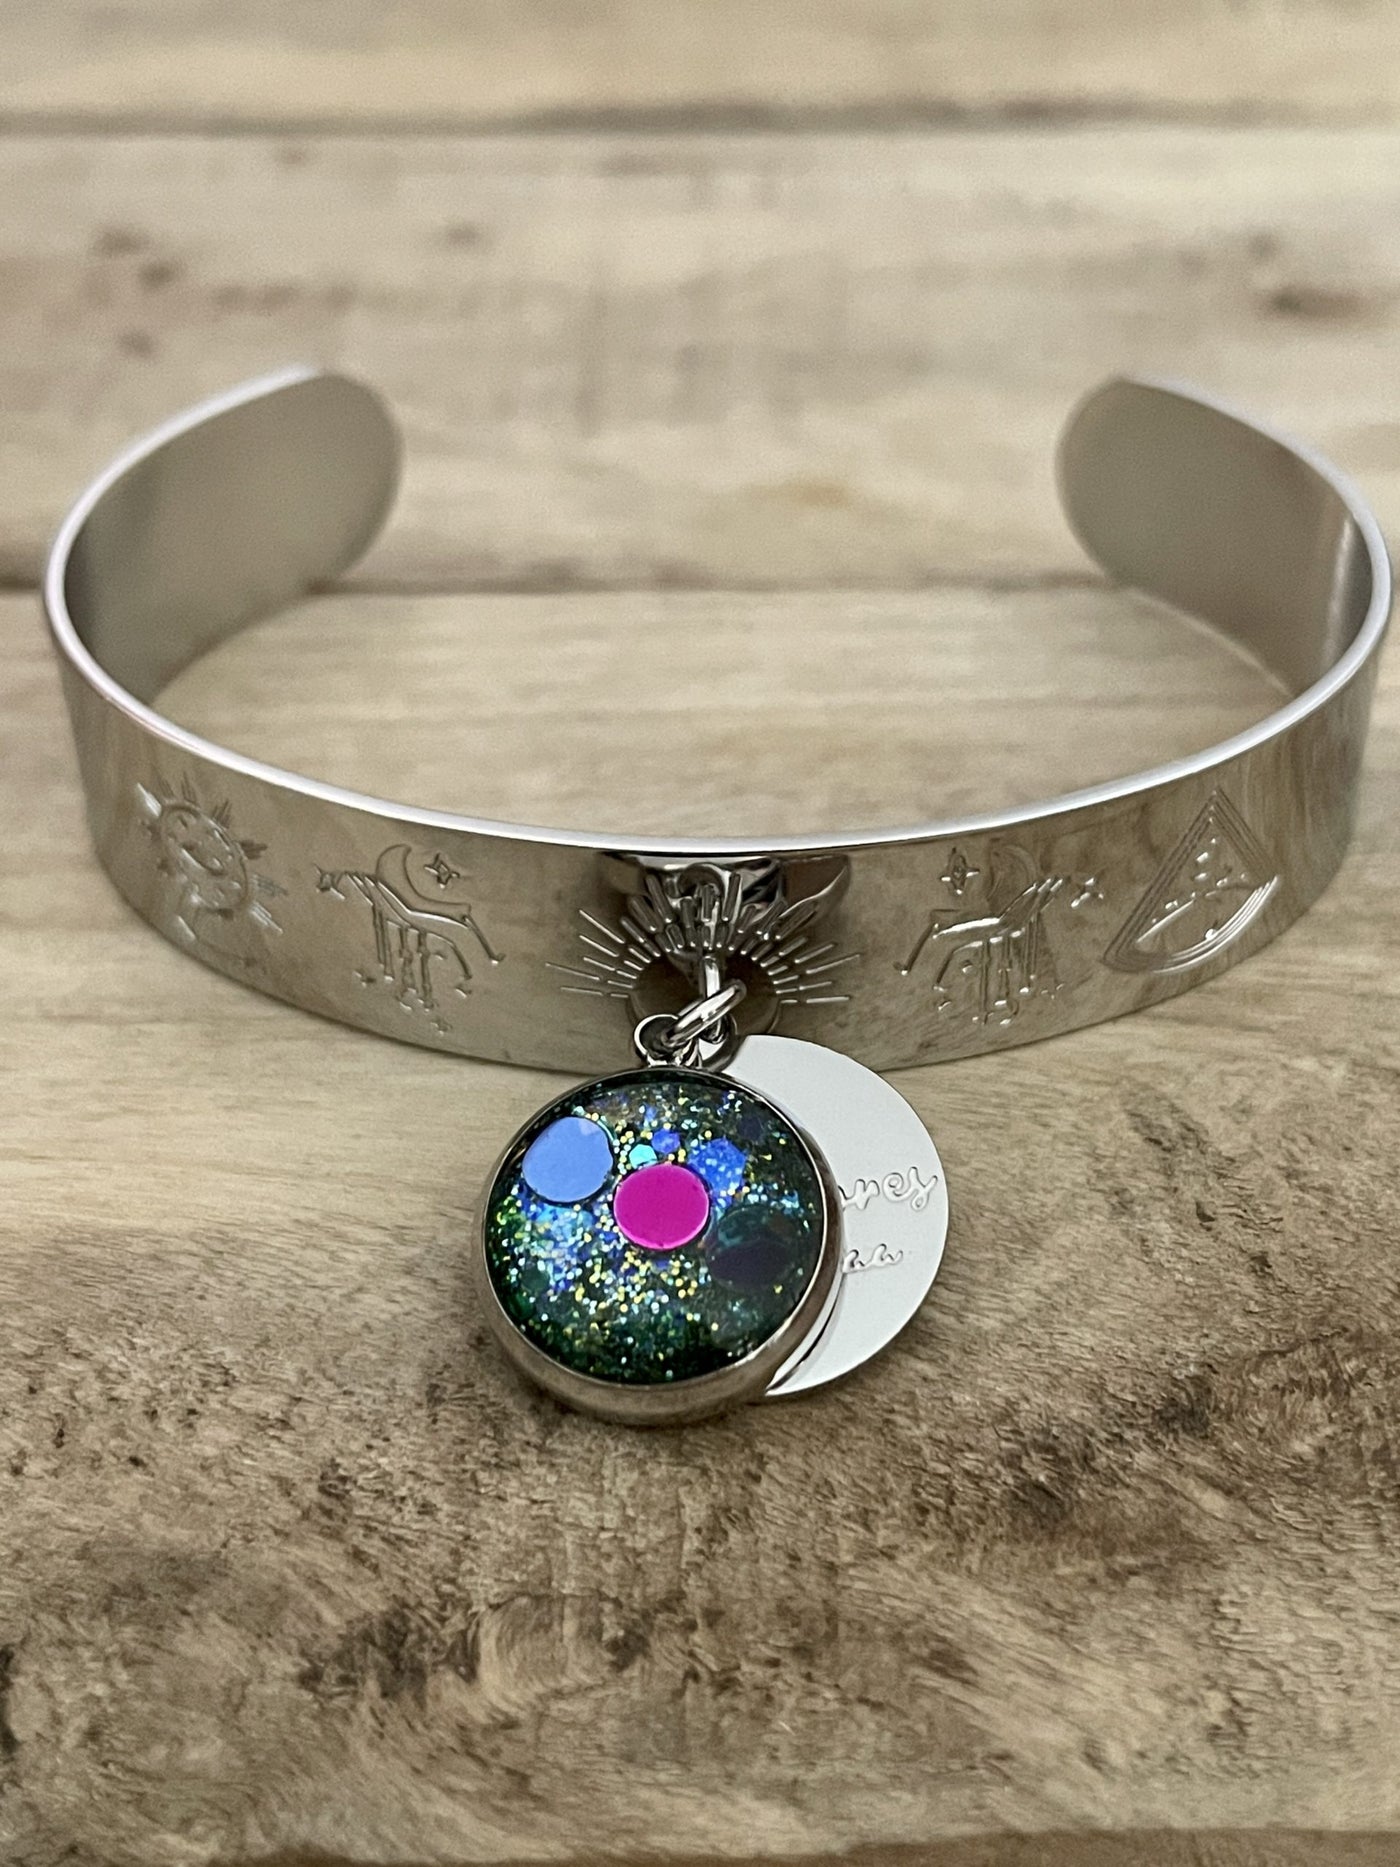 WIKKA Ocean silver bracelet